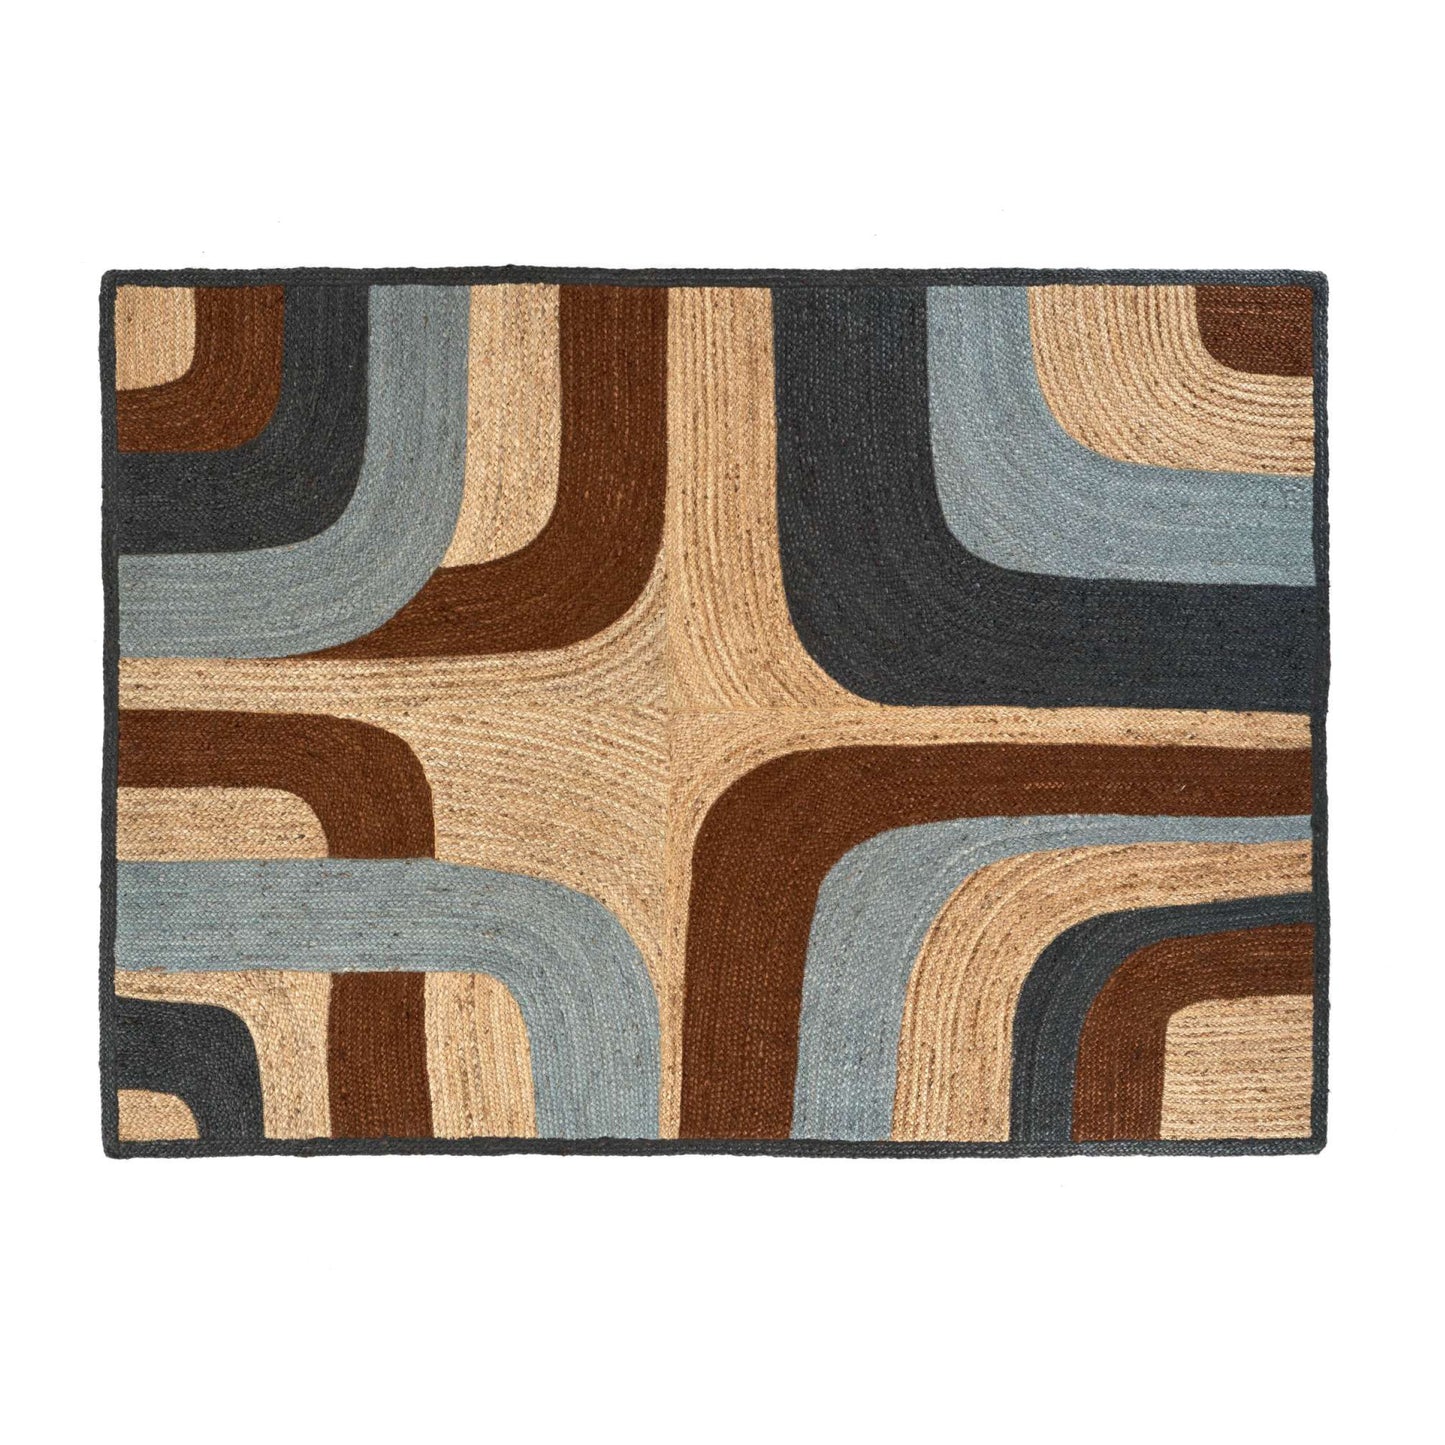 Penny Lane rug